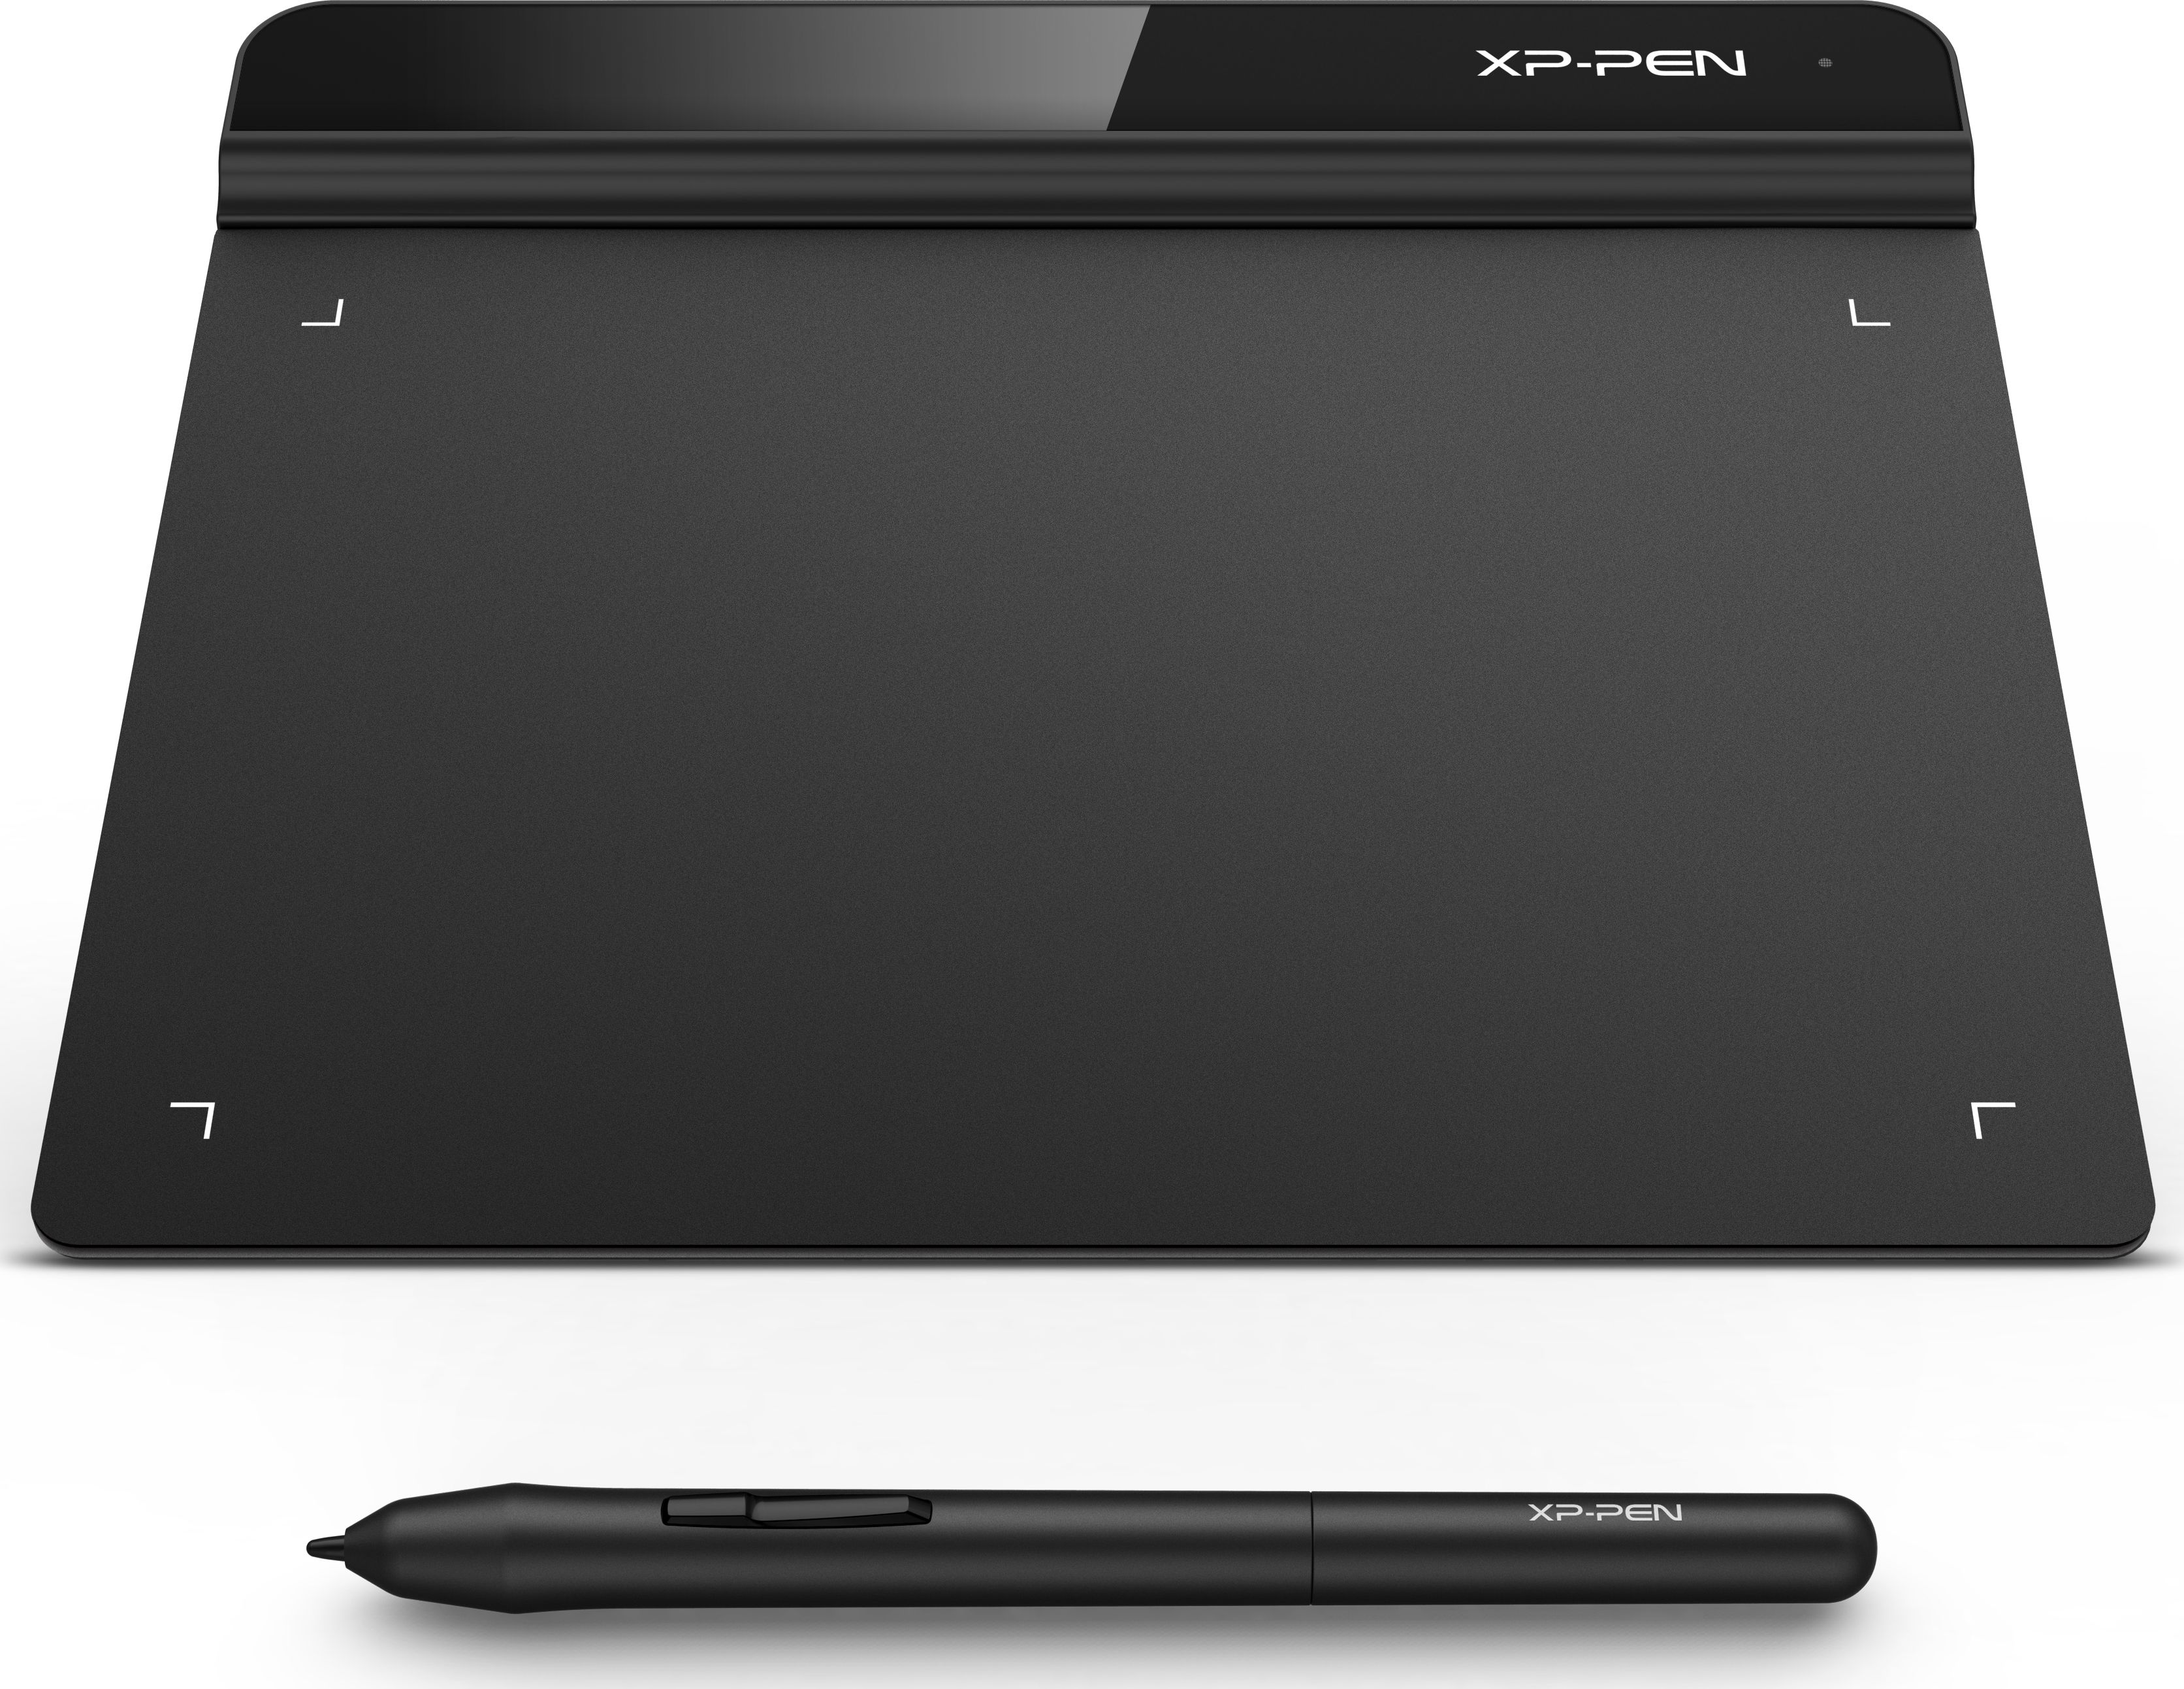 Графические планшеты xp pen купить. Графический планшет XP Pen g640. Star g640 графический планшет. ЧЗ Зут п640ы. XP-Pen g640 USB.